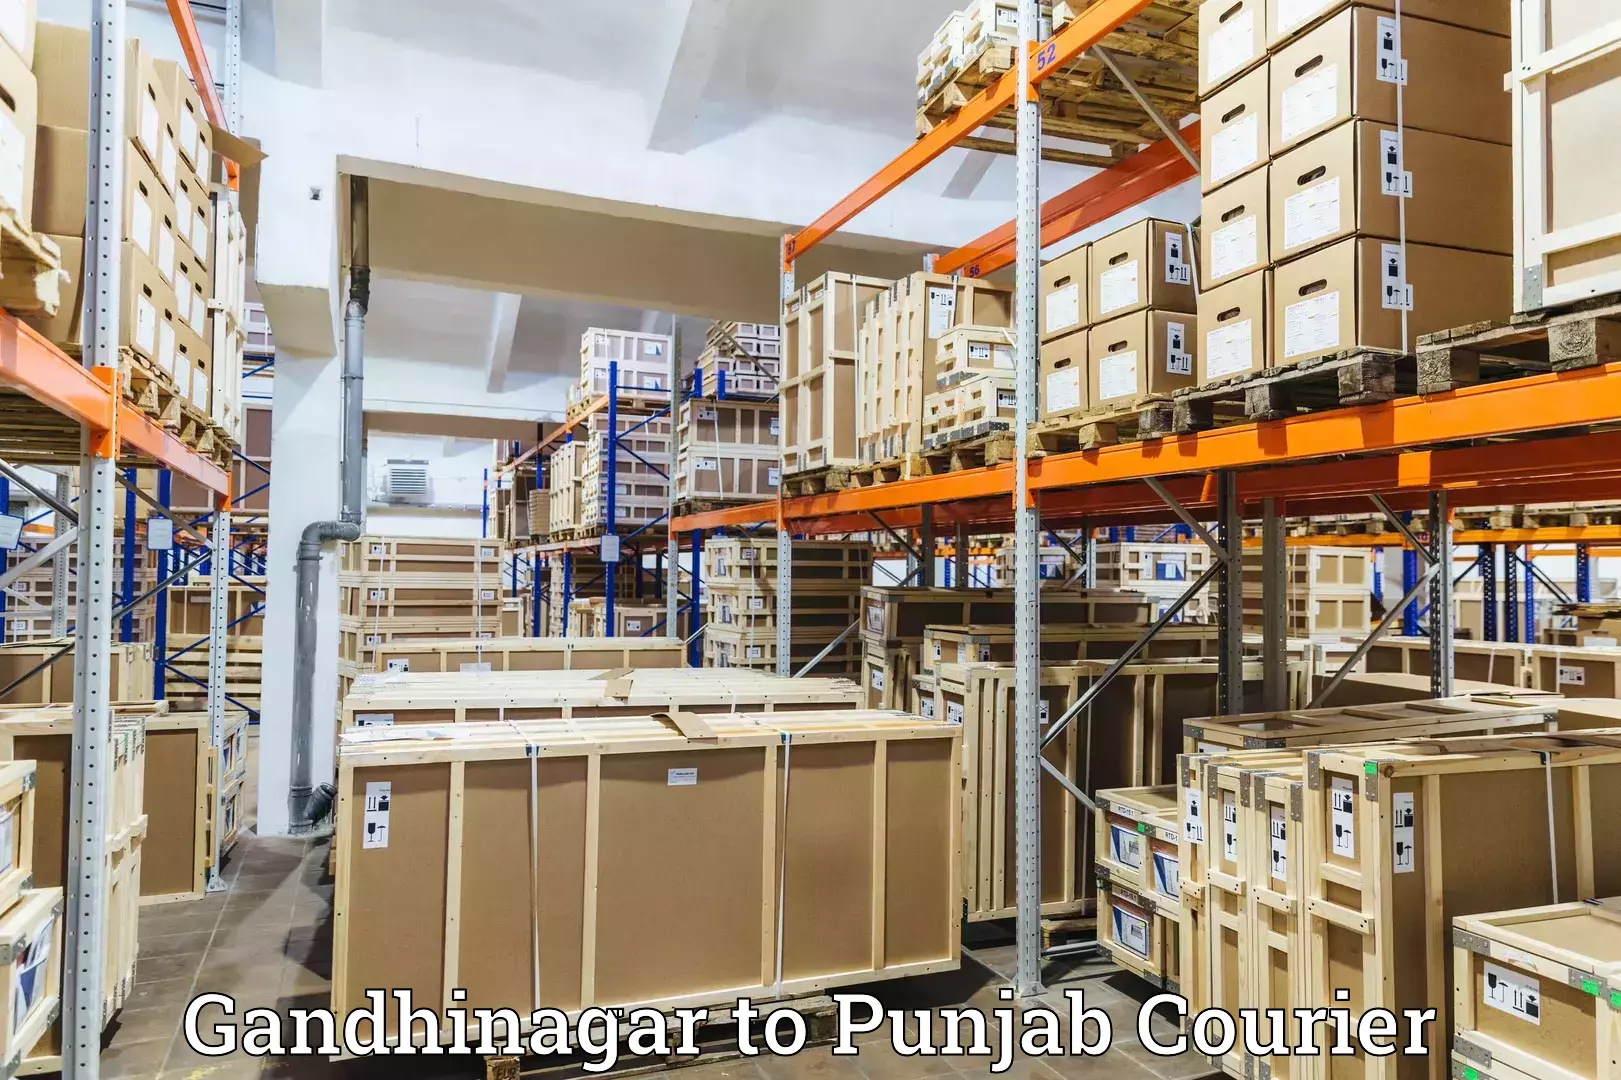 Next-generation courier services Gandhinagar to Bathinda